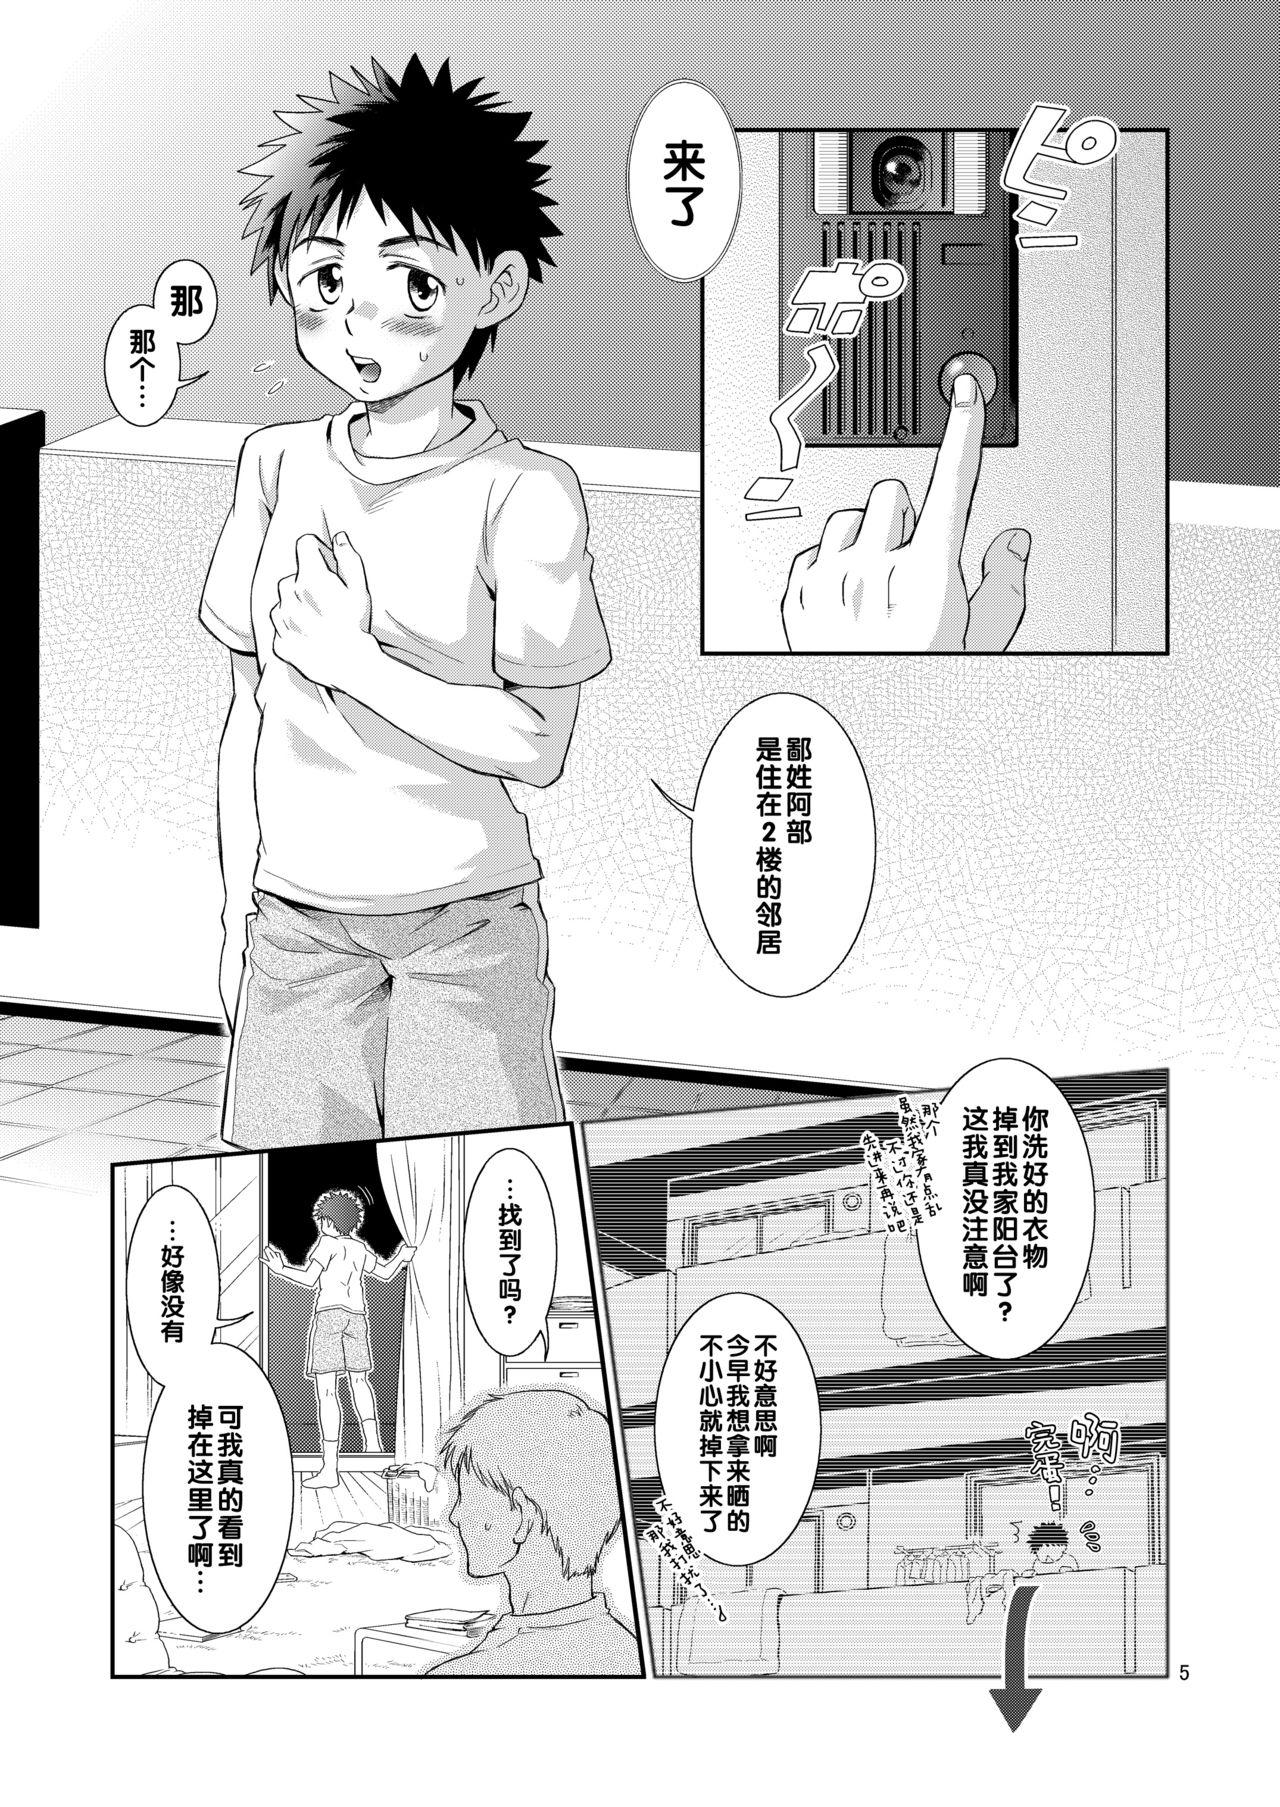 Tribbing Super Freak Takaya-kun! - Ookiku furikabutte | big windup Free - Page 5